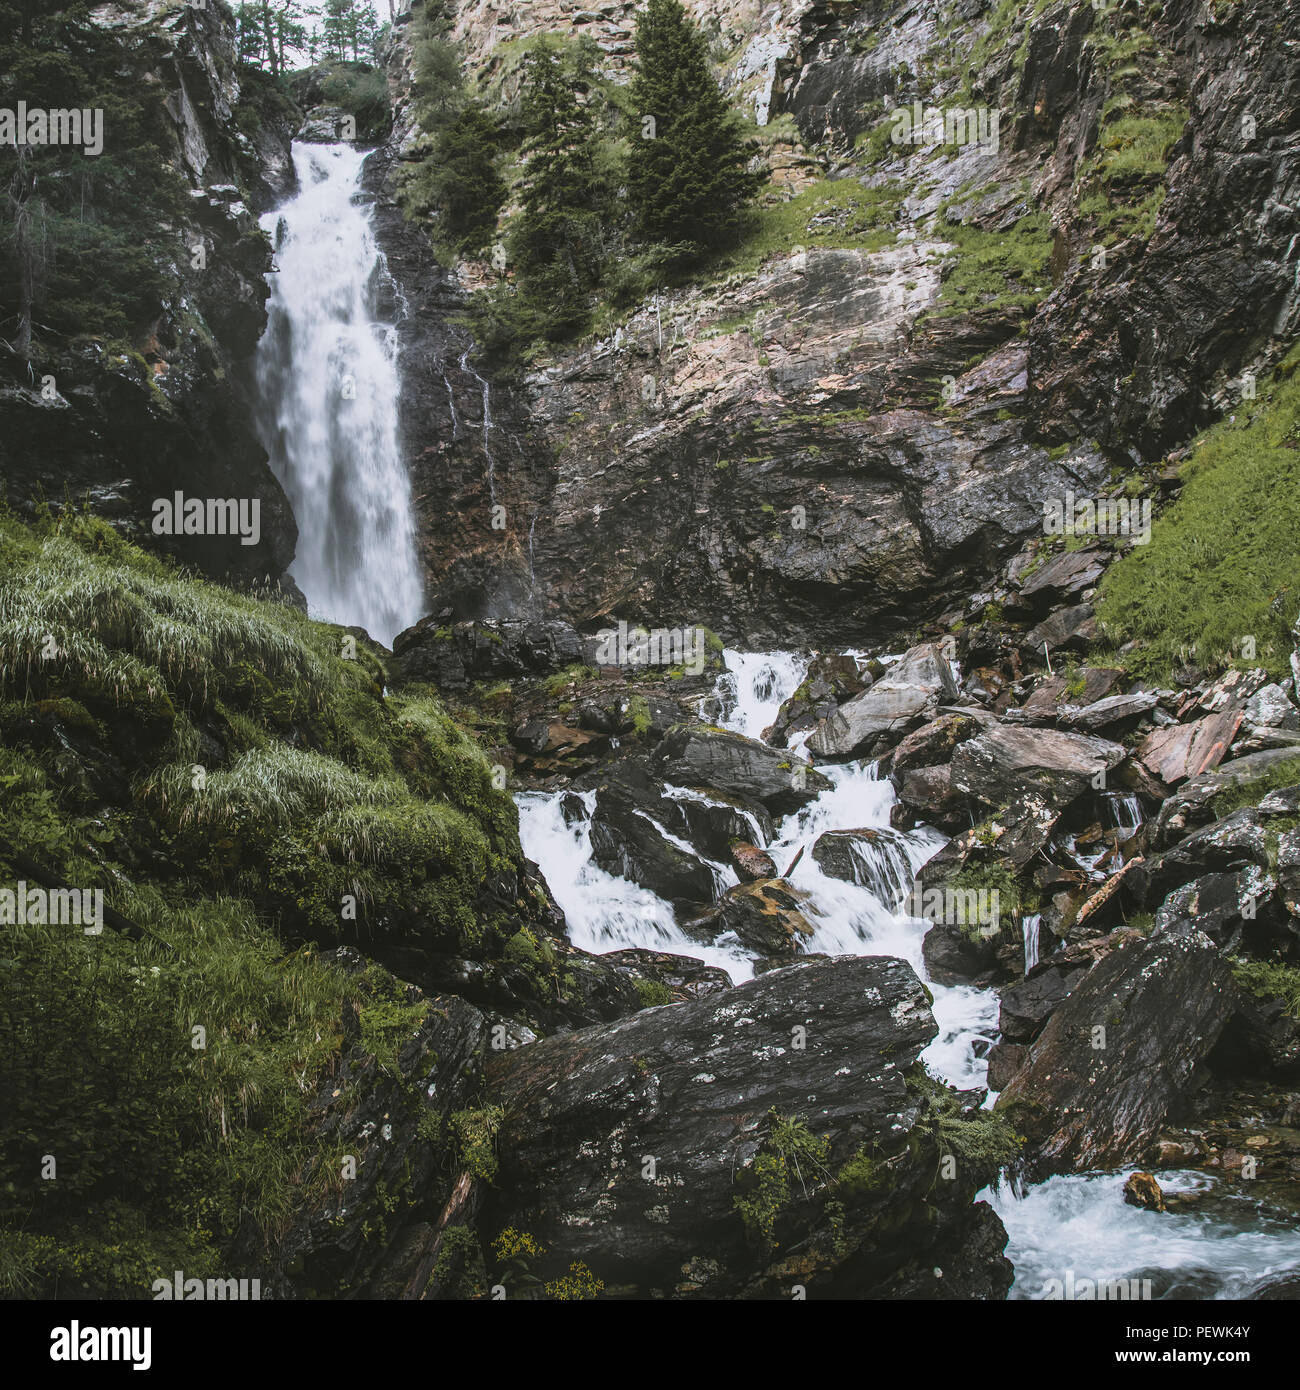 saent waterfall on italian alps, Rabbi valley Stock Photo